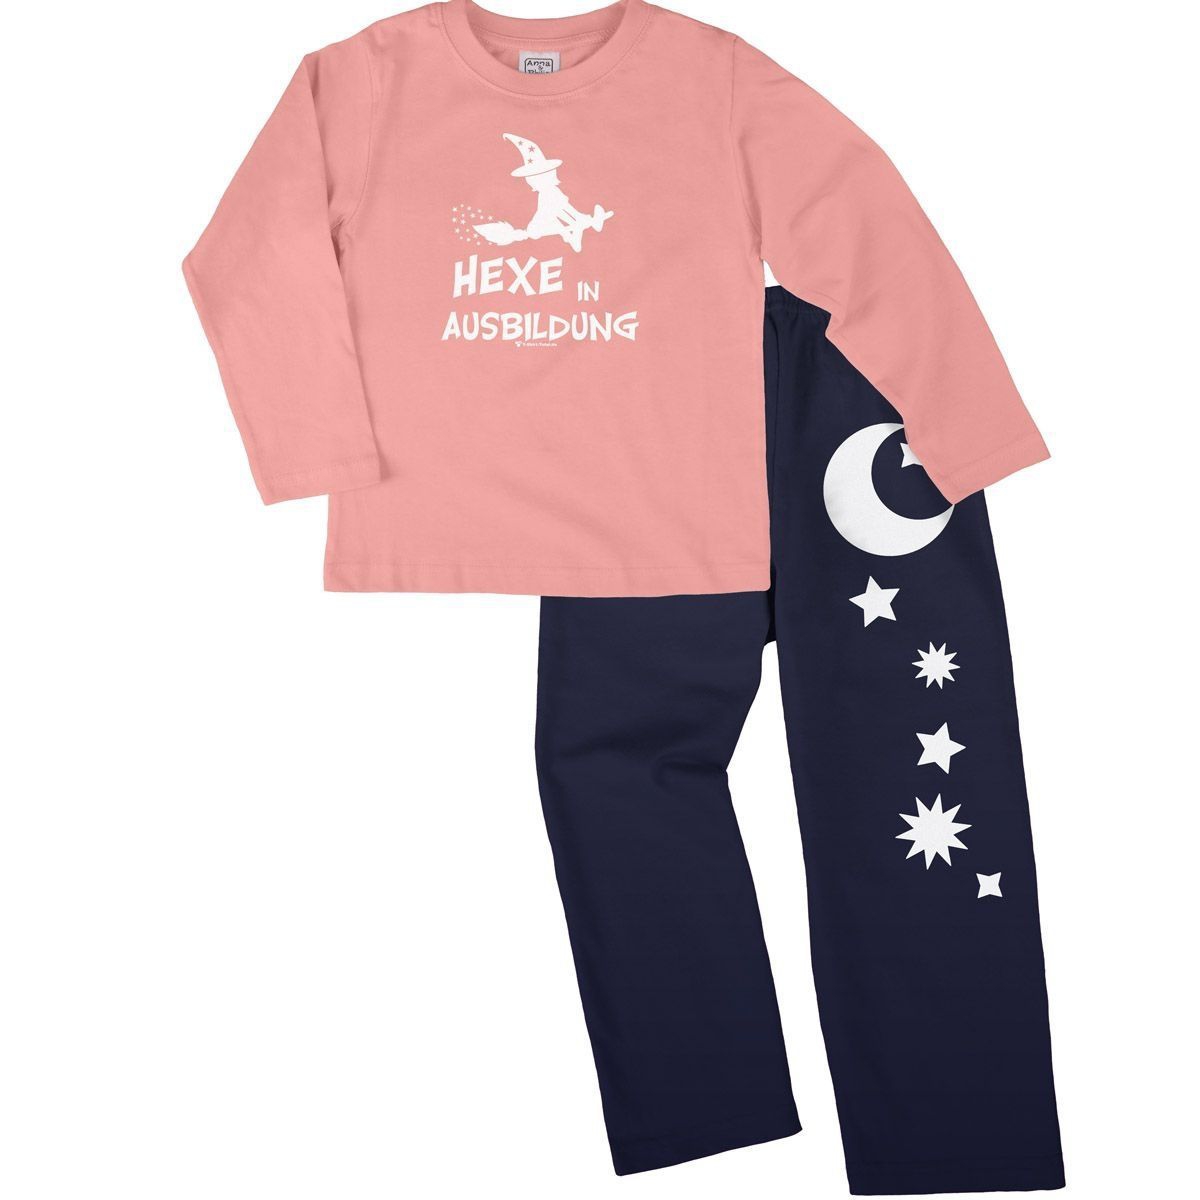 Hexe in Ausbildung Pyjama Set rosa / navy 110 / 116